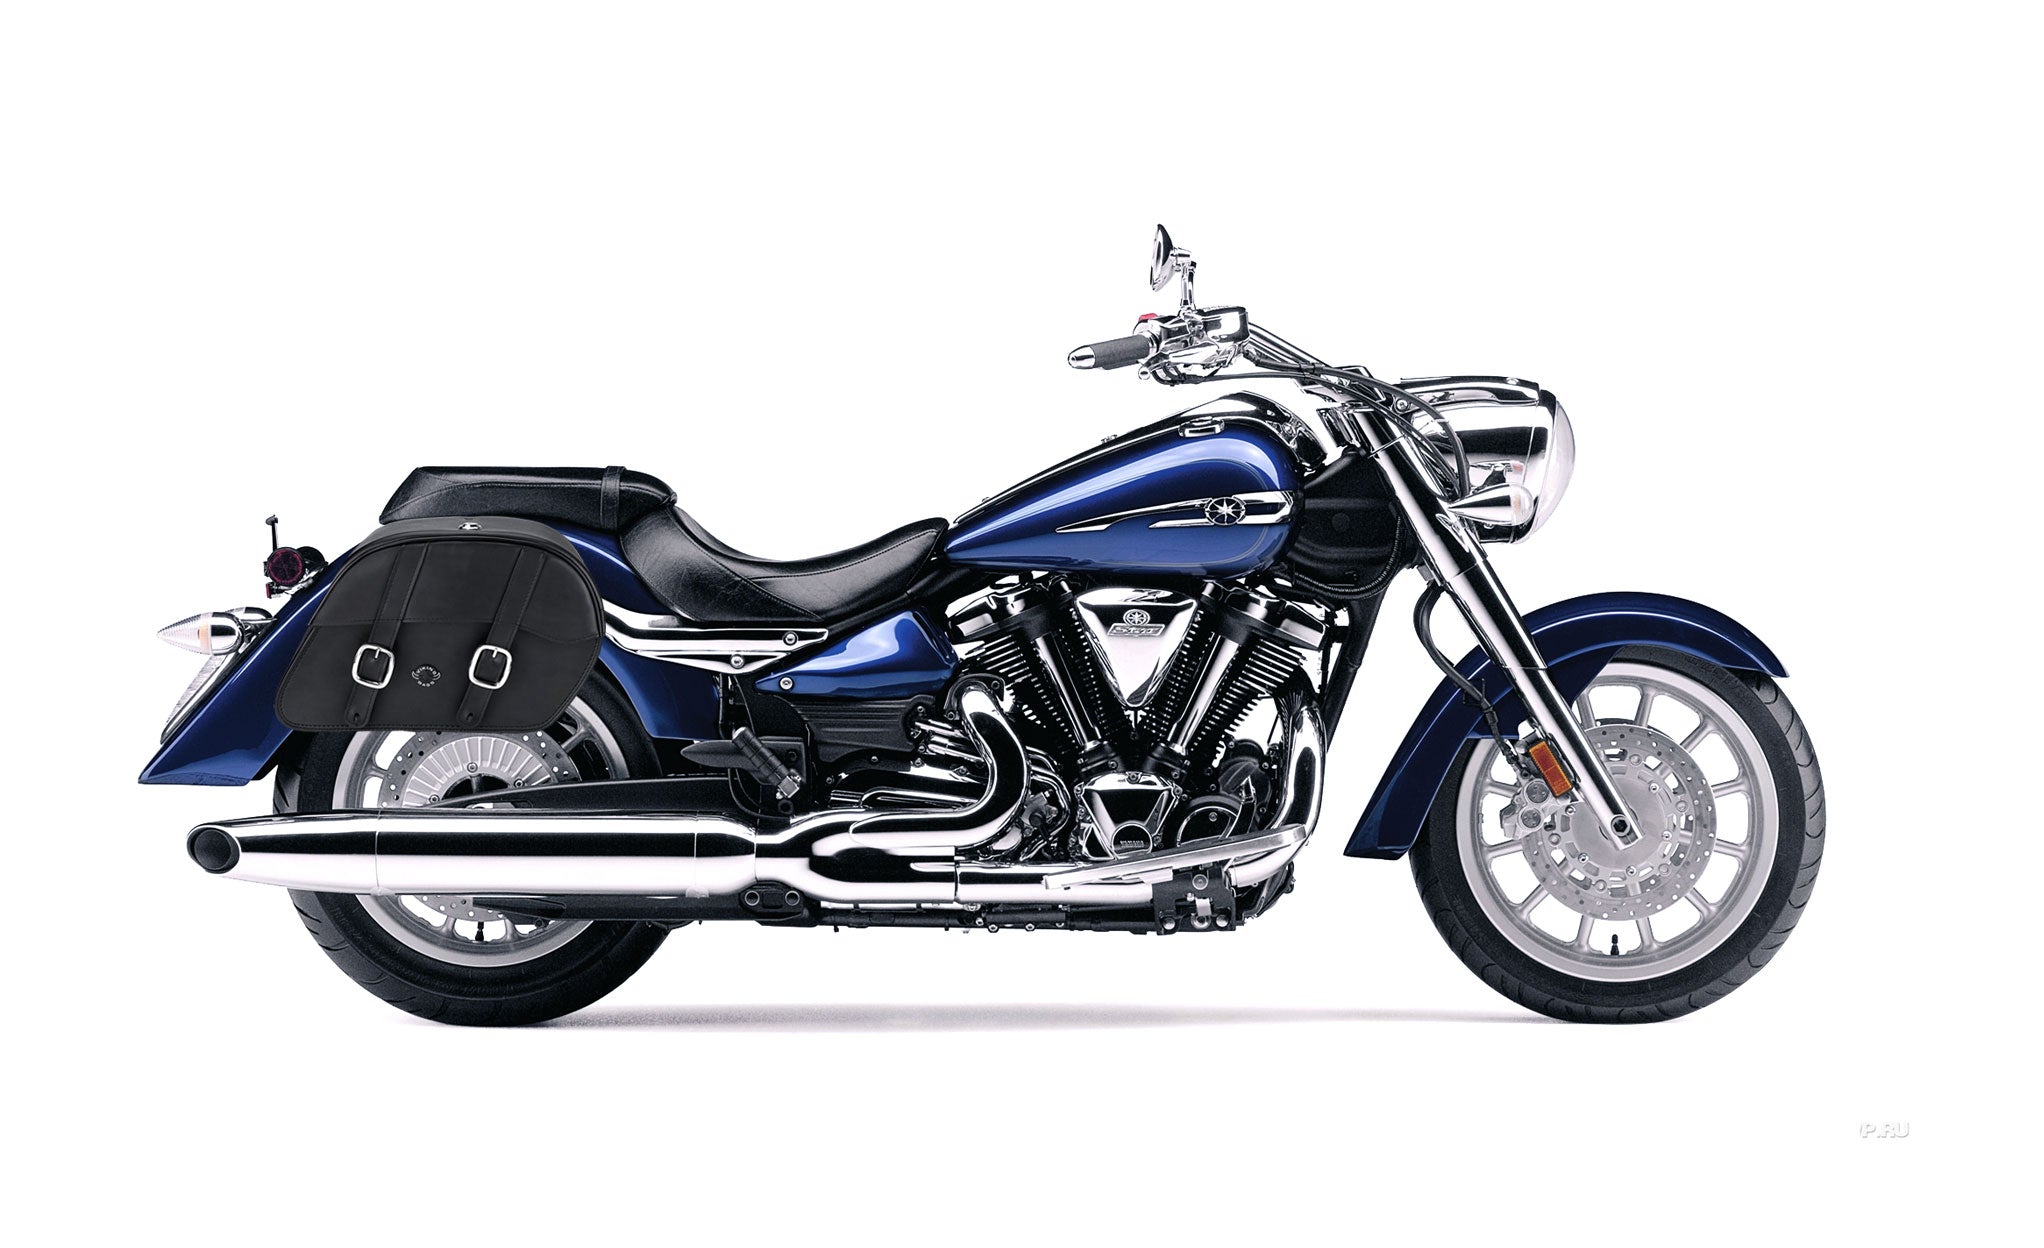 Viking Skarner Medium Lockable Yamaha Stratoliner Xv 1900 Leather Motorcycle Saddlebags on Bike Photo @expand